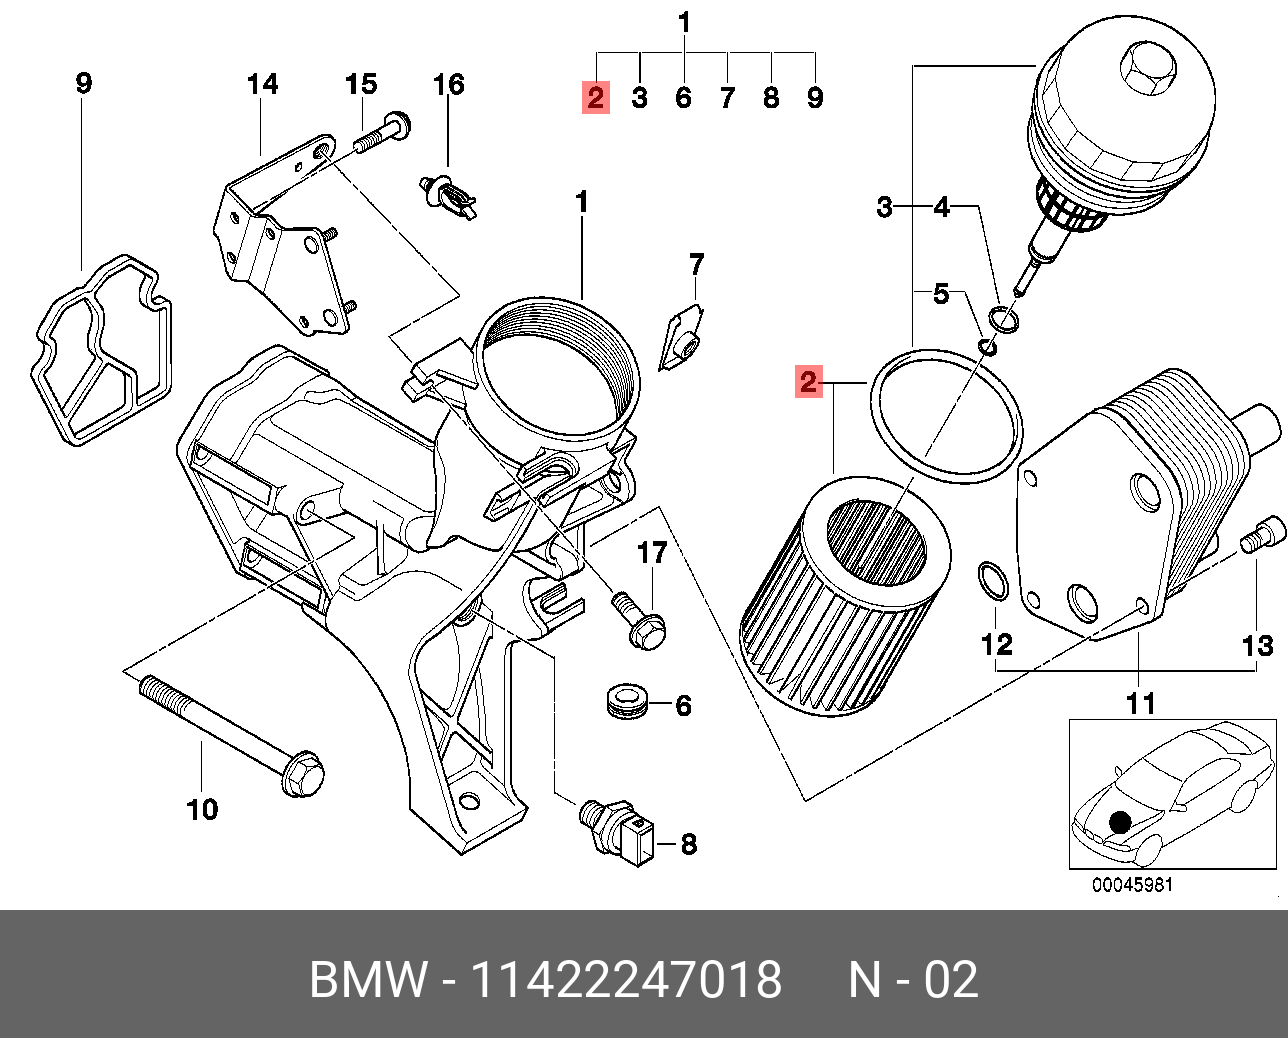 Фильтр масляный   BMW арт. 11422247018